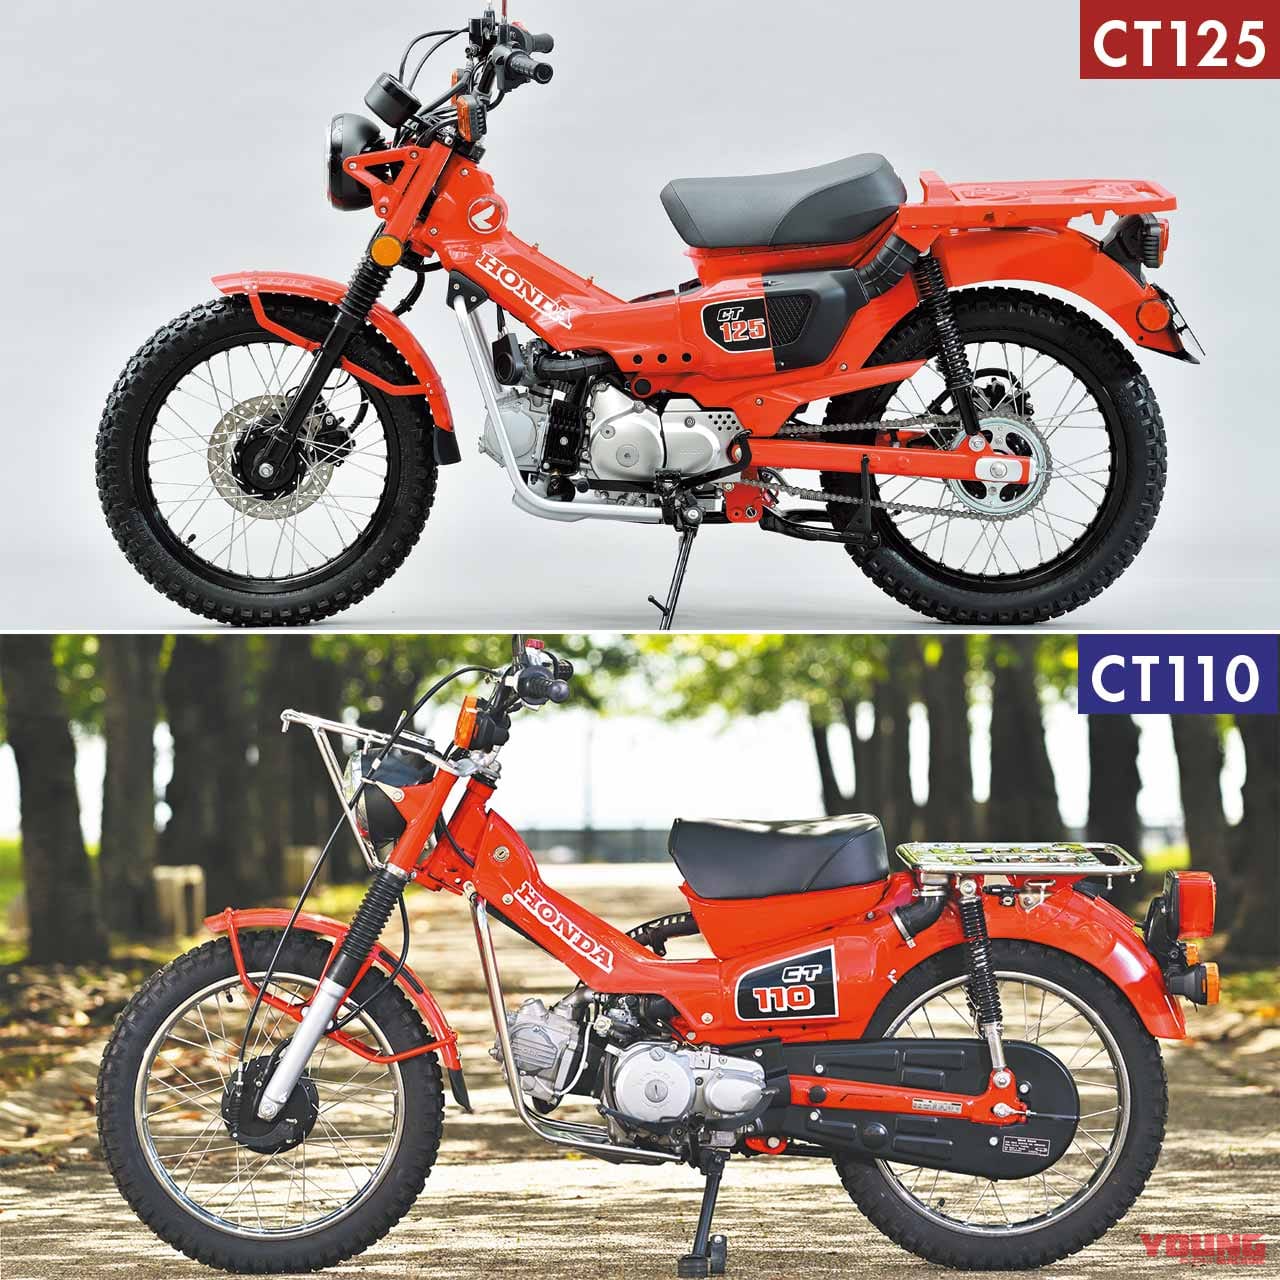 ホンダ新型ct125の機能美は旧型と共通 Ct110 ハンターカブ 新旧徹底比較 Webヤングマシン 最新バイク情報